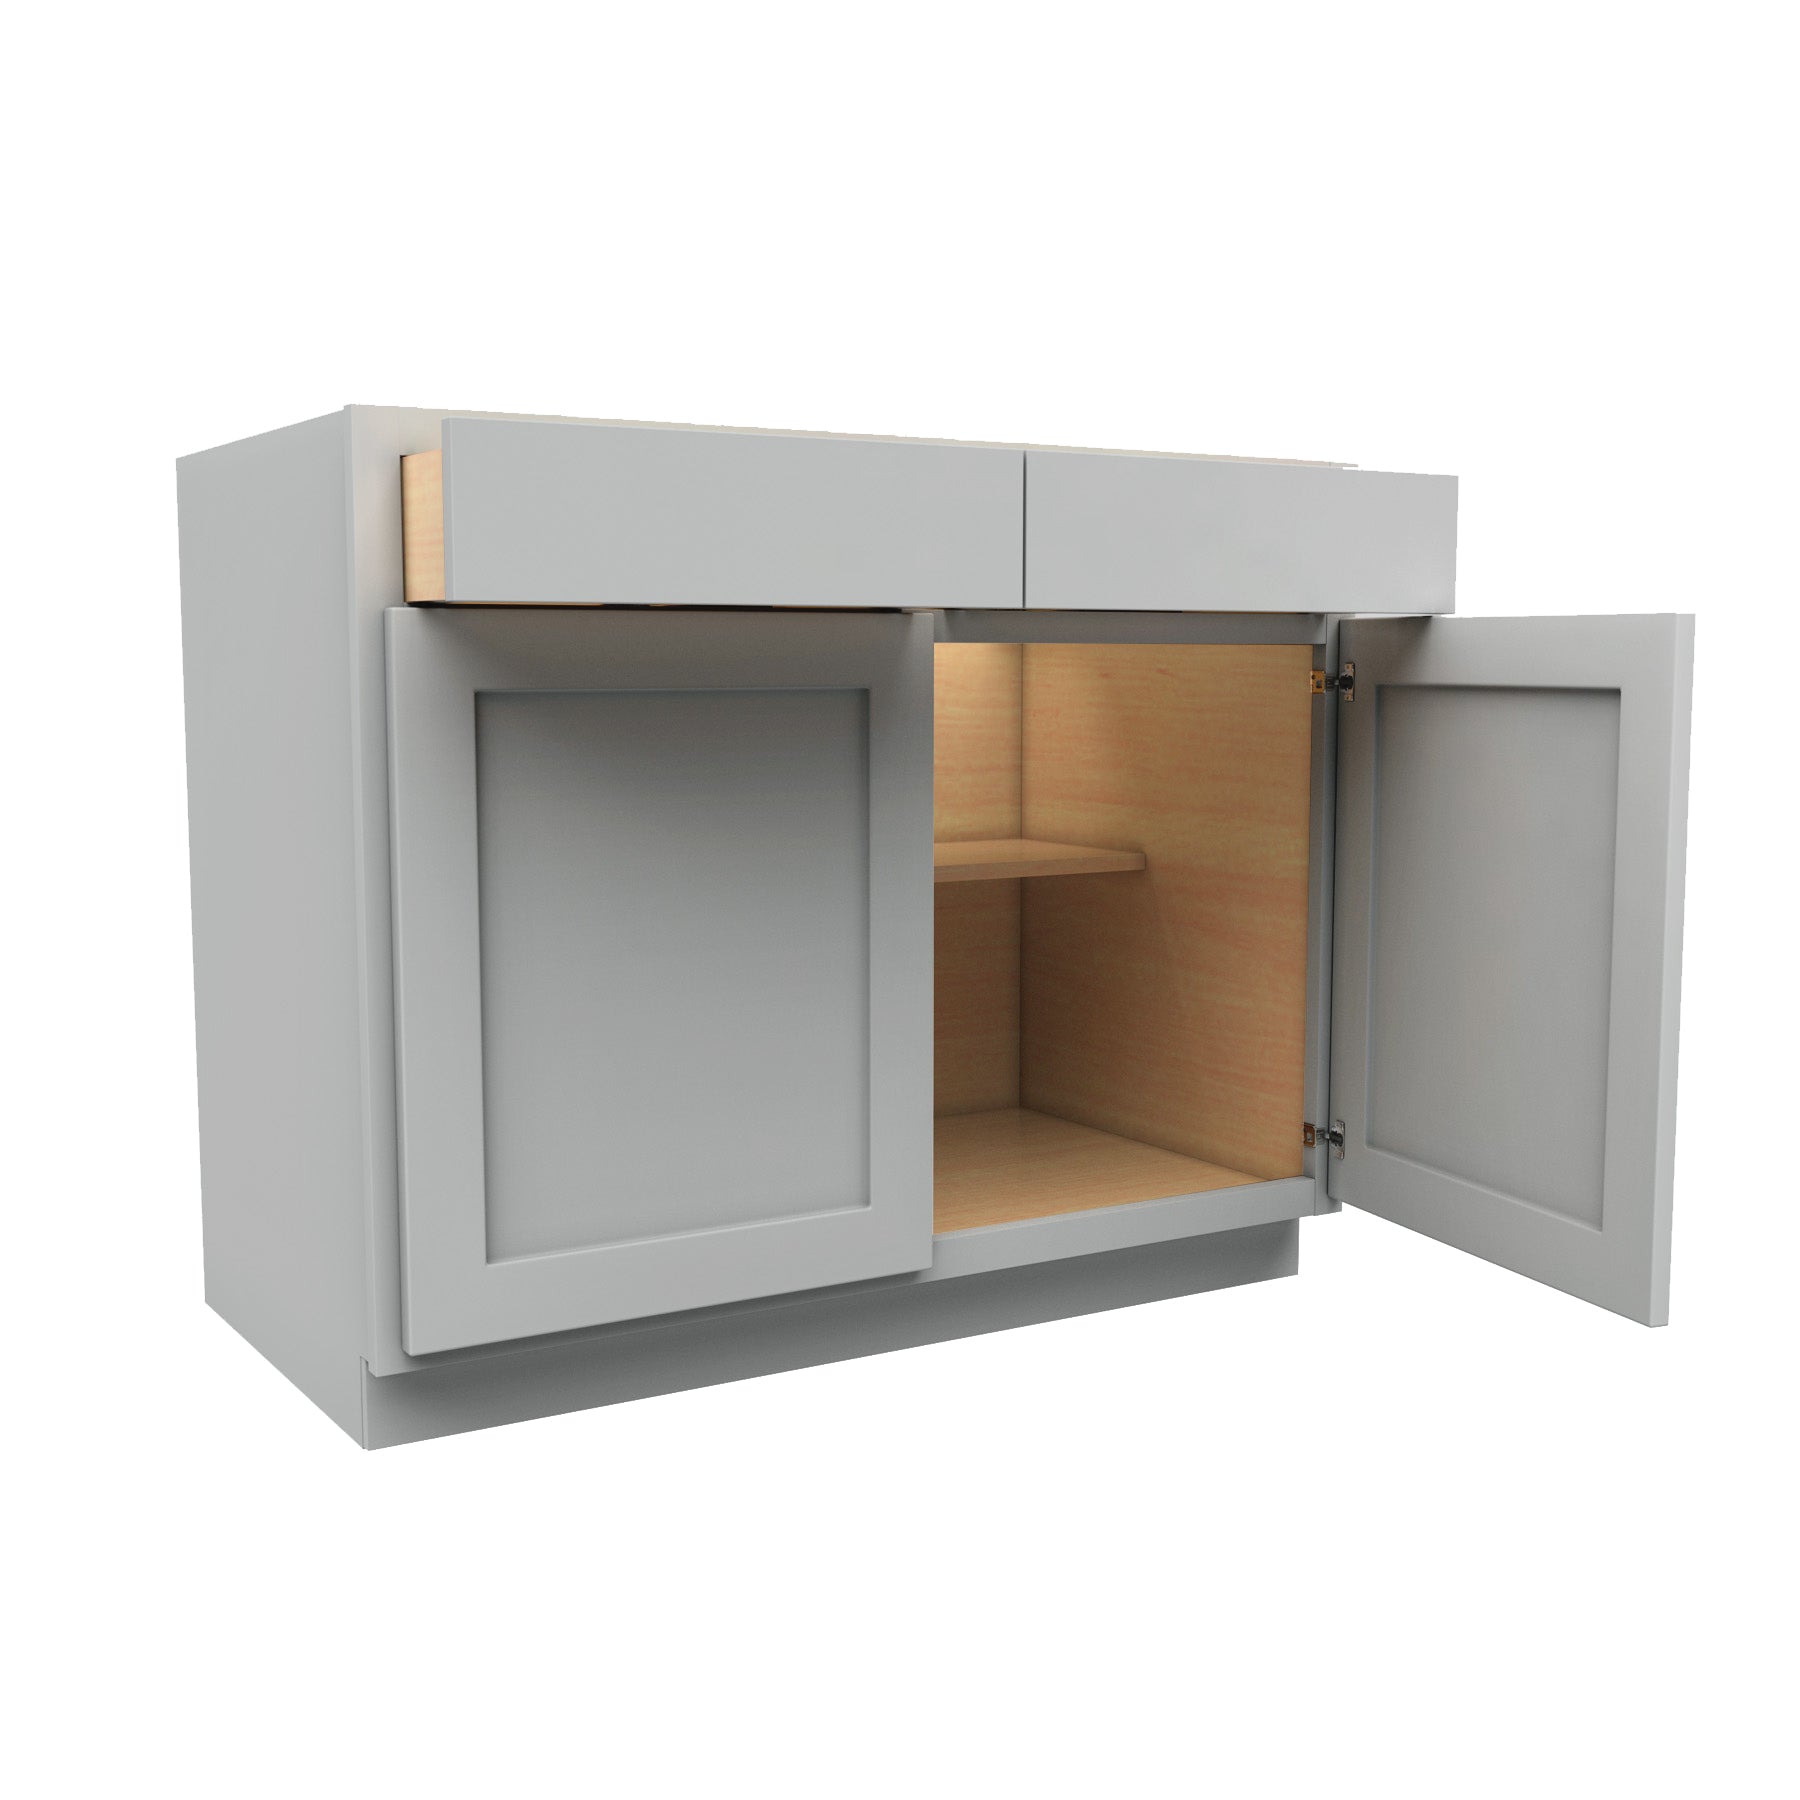 Luxor Misty Grey - Double Door Base Cabinet | 42"W x 34.5"H x 24"D